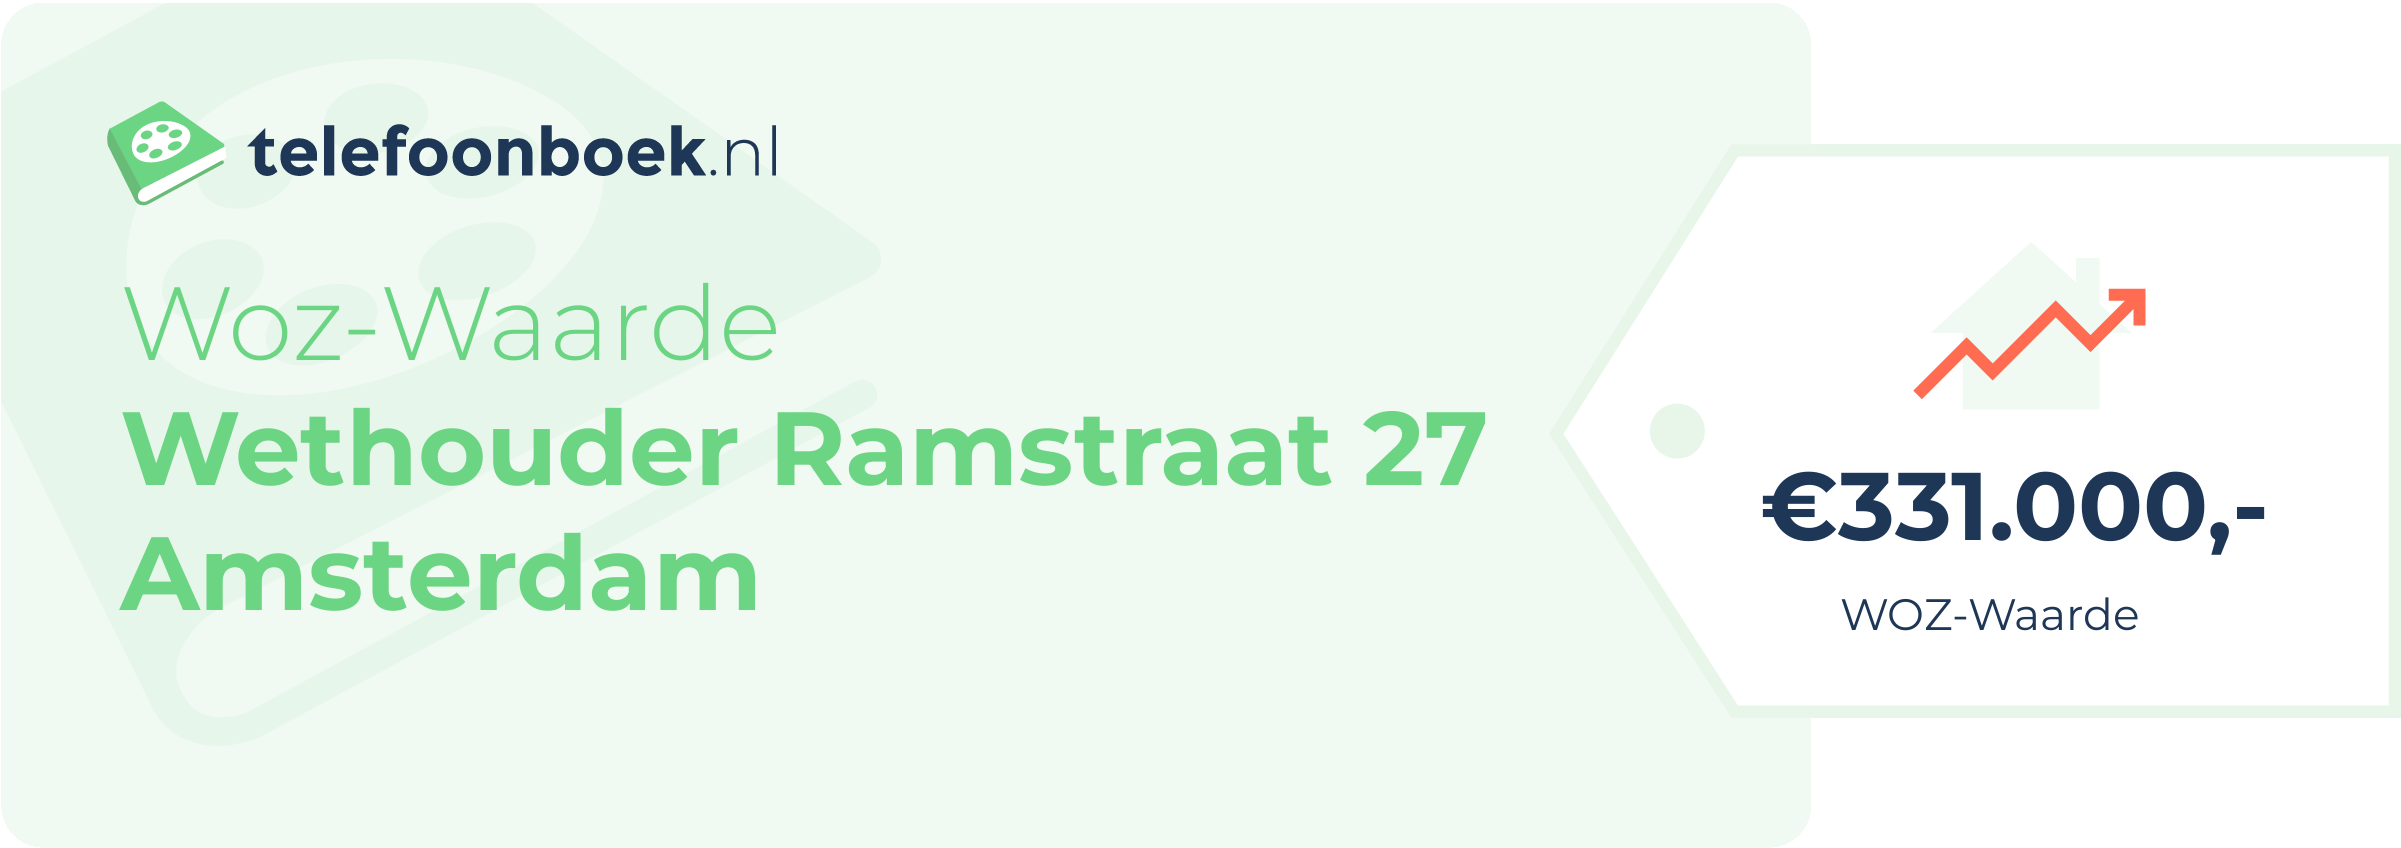 WOZ-waarde Wethouder Ramstraat 27 Amsterdam